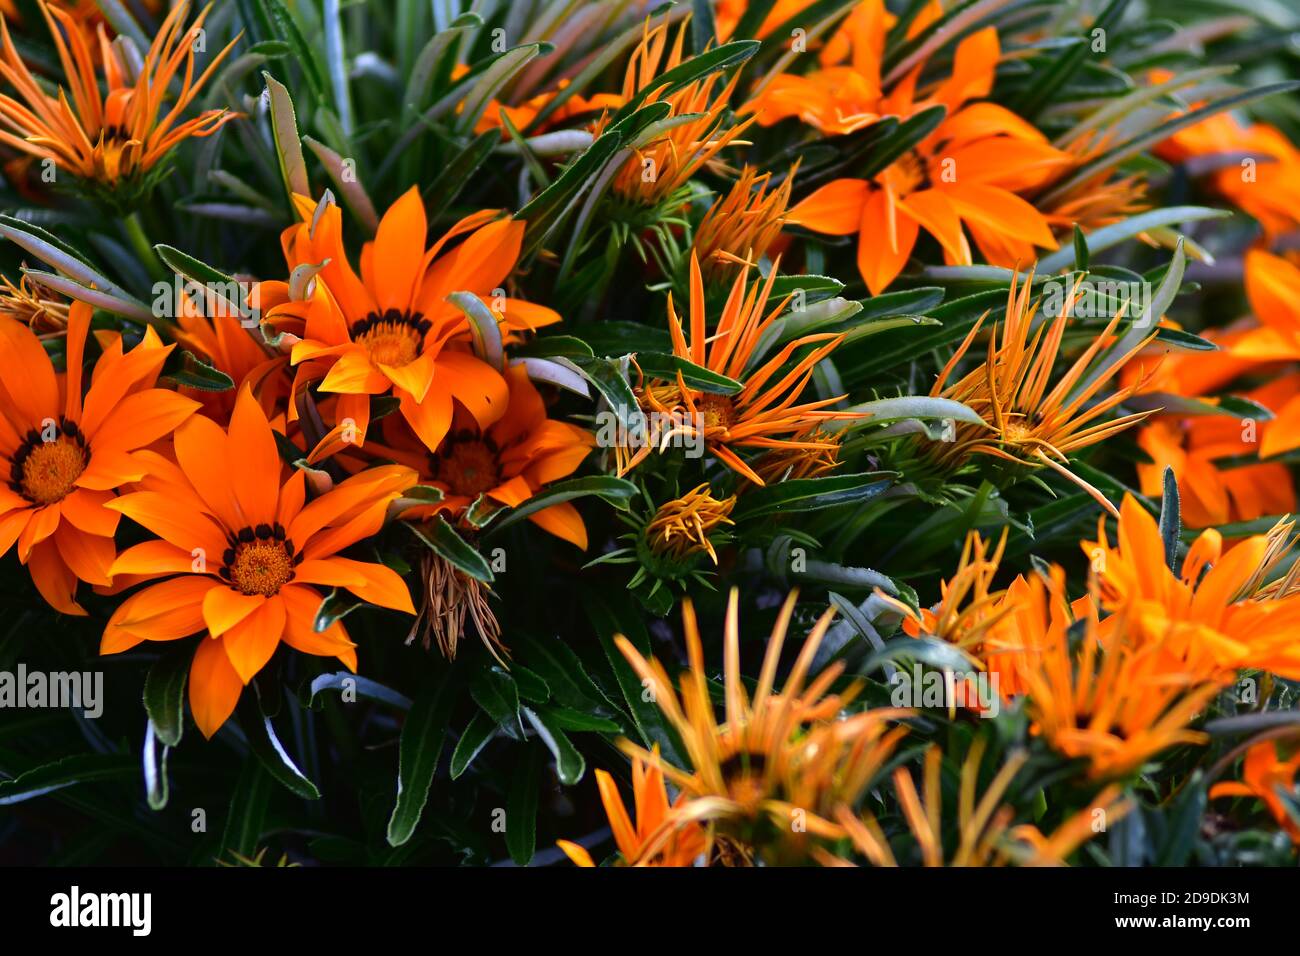 Modello di fiori a contrasto con petali arancioni tra foglie di colore verde scuro. Foto Stock